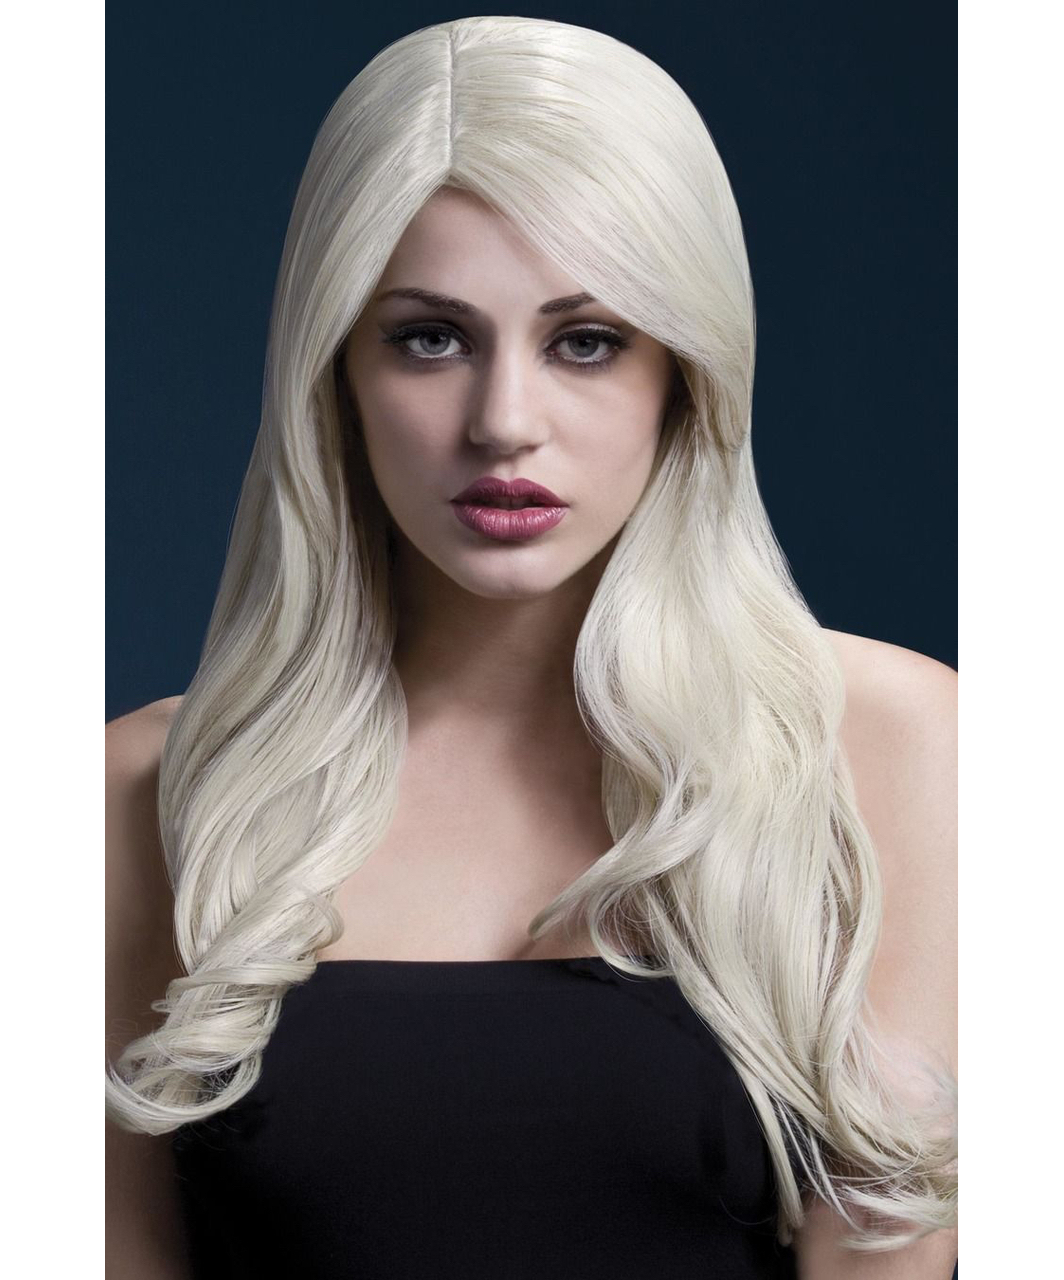 Fever Nicole plalatinum blonde wig